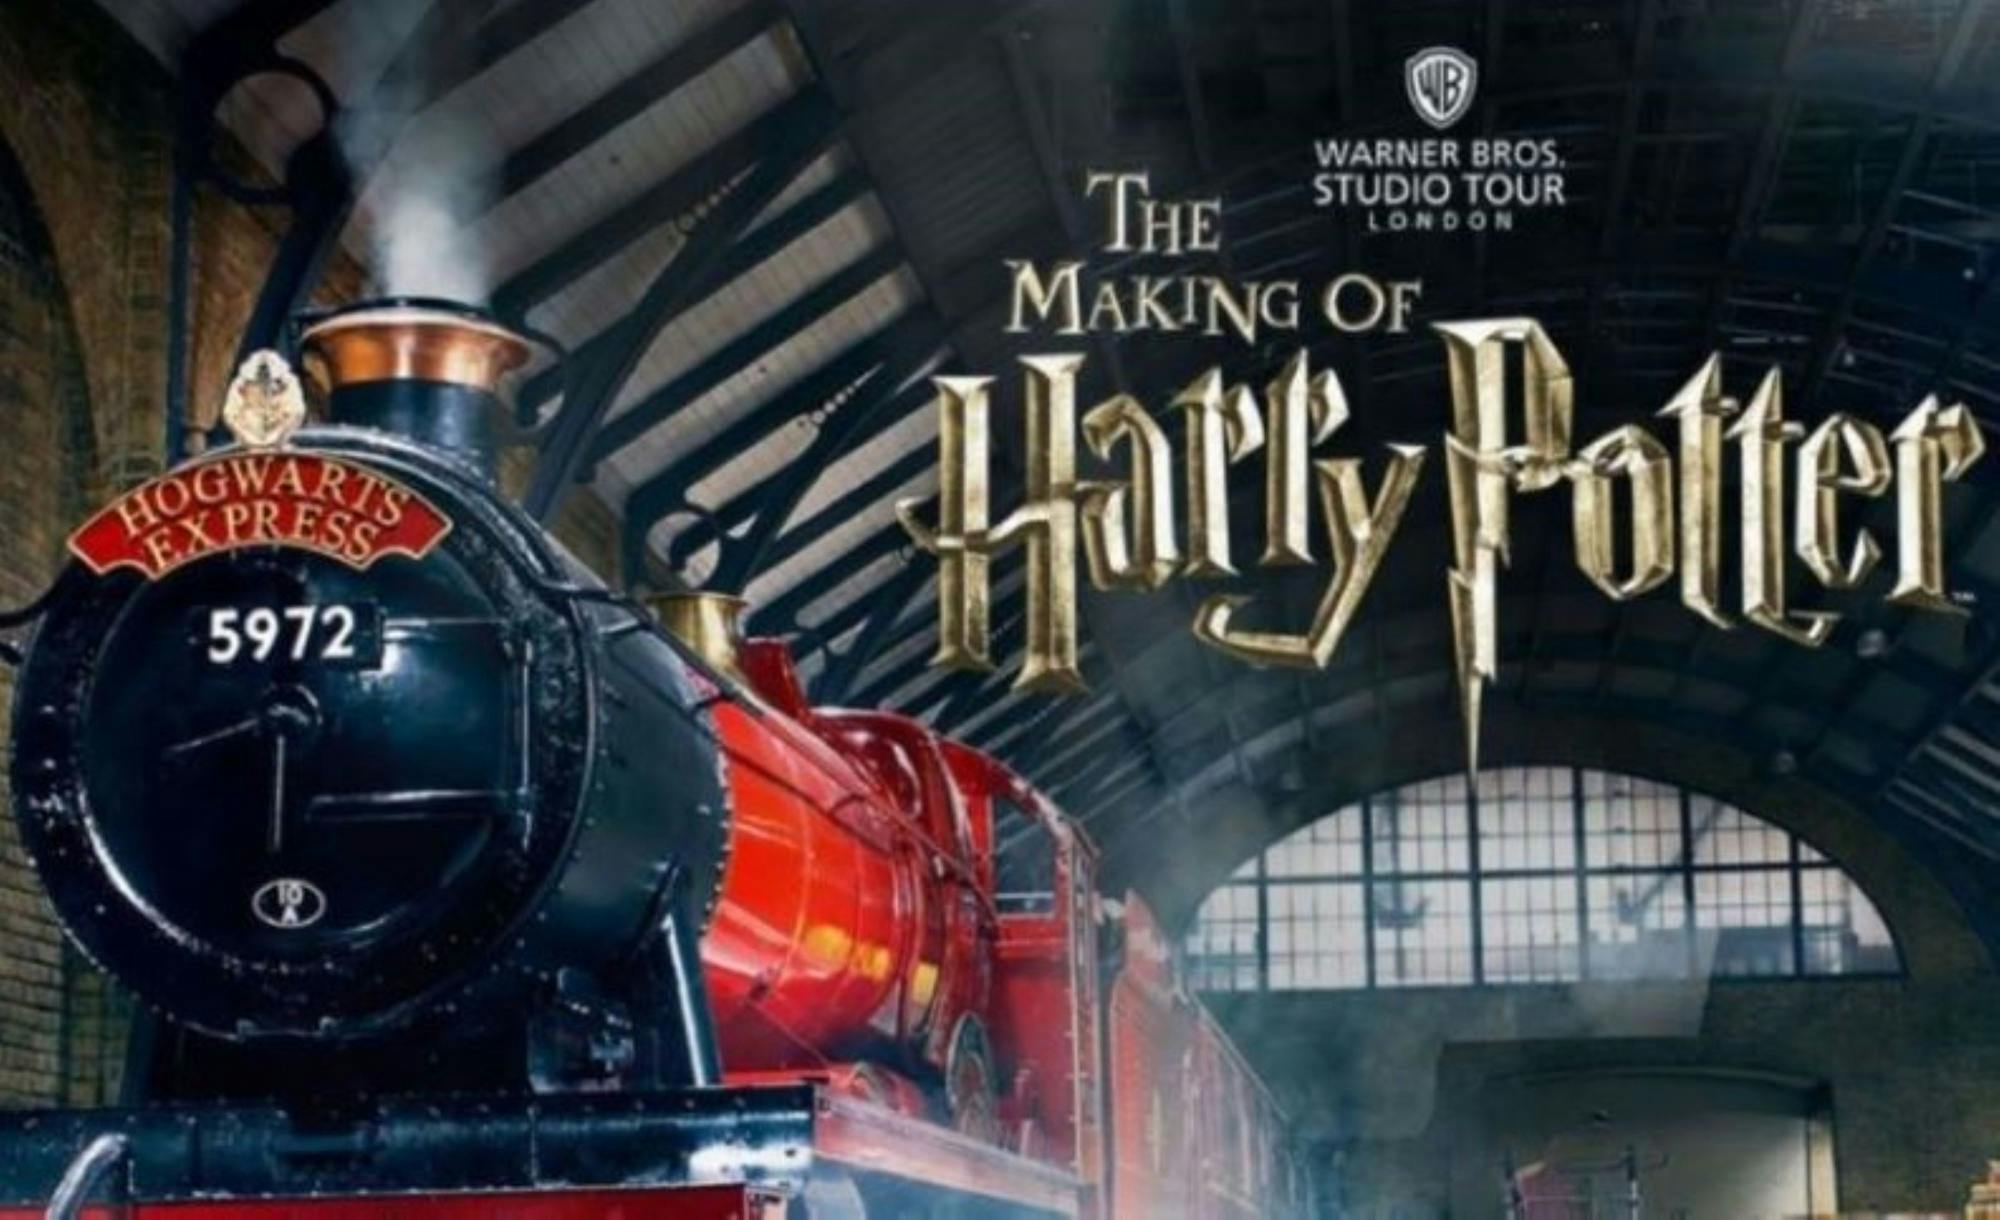 "The Making of Harry Potter" da Birmingham in prima classe